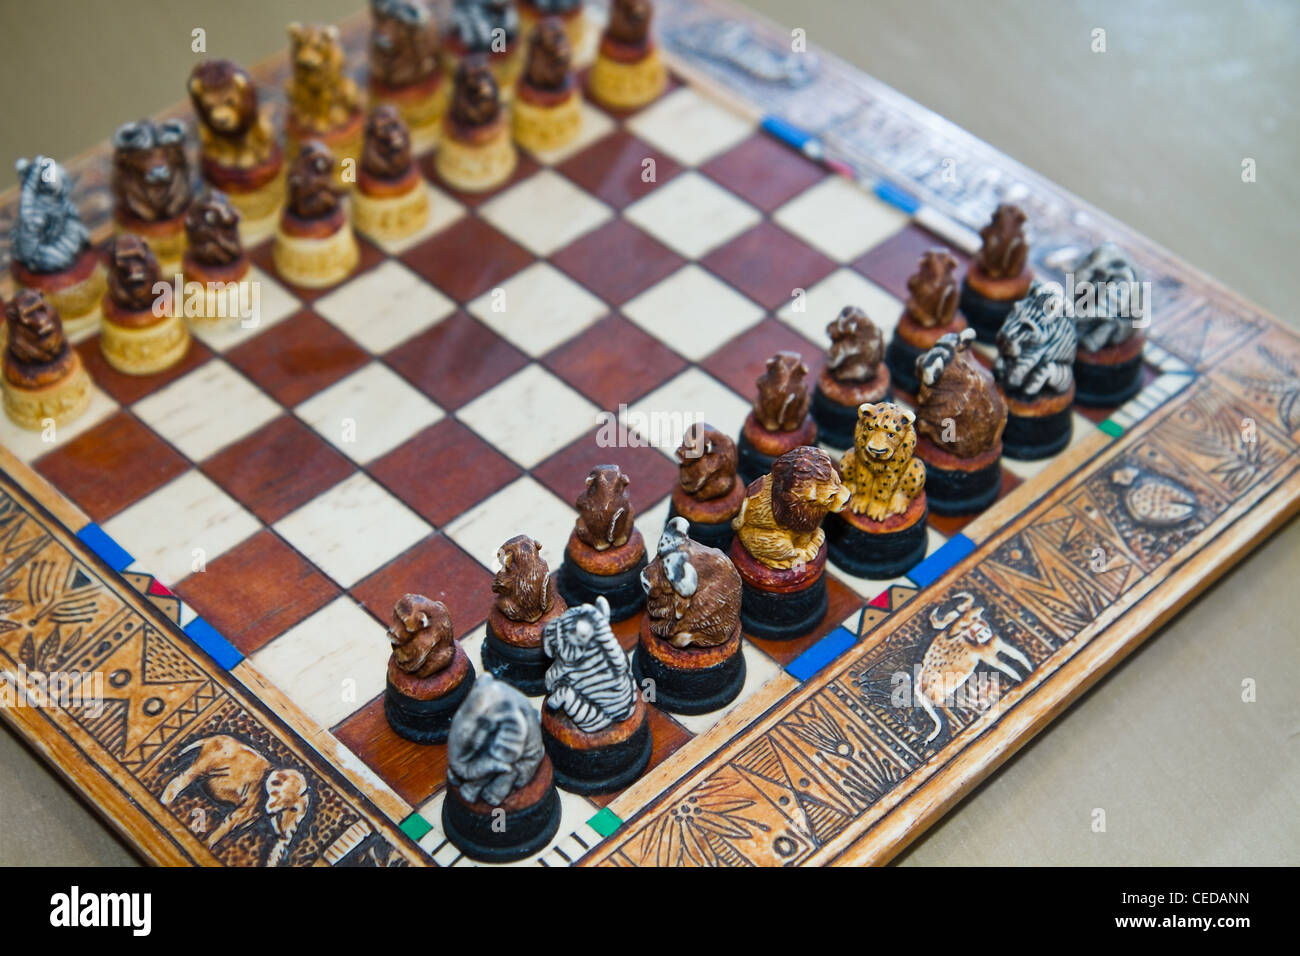 Juego de ajedrez de Safari - Tablero de ajedrez y el hombre - decorativo tablero decorado con figuras de animales Safari Foto de stock